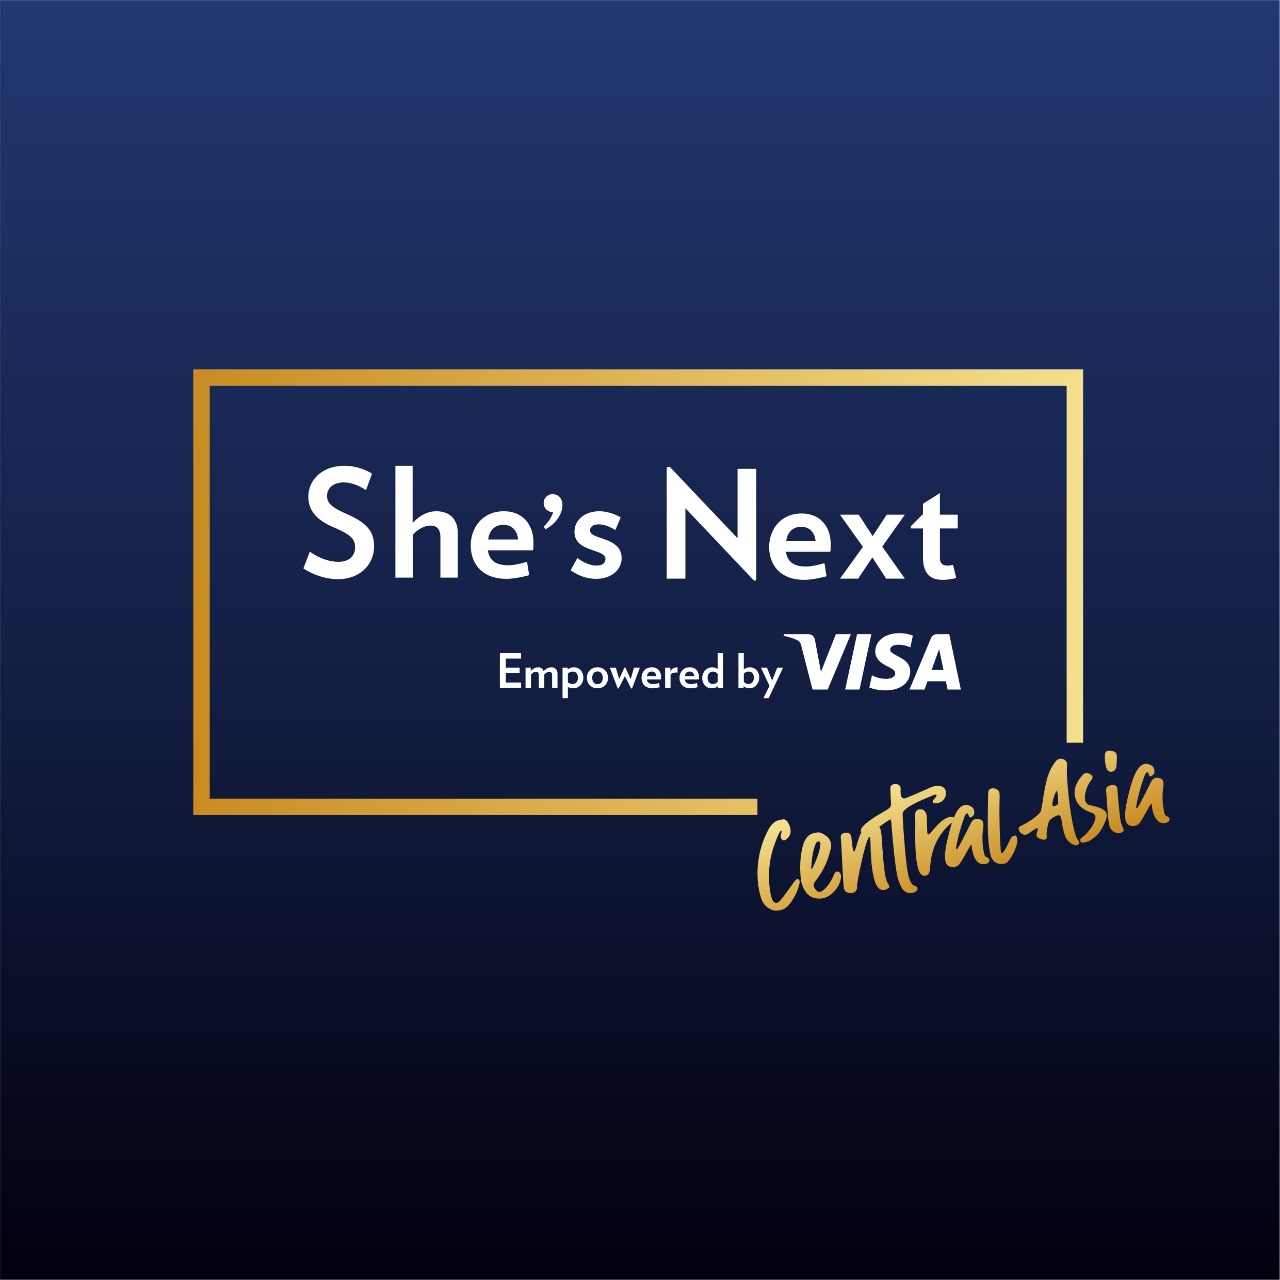 Visa объявляет о запуске глобальной инициативы She’s Next, Empowered by Visa в Центральной Азии